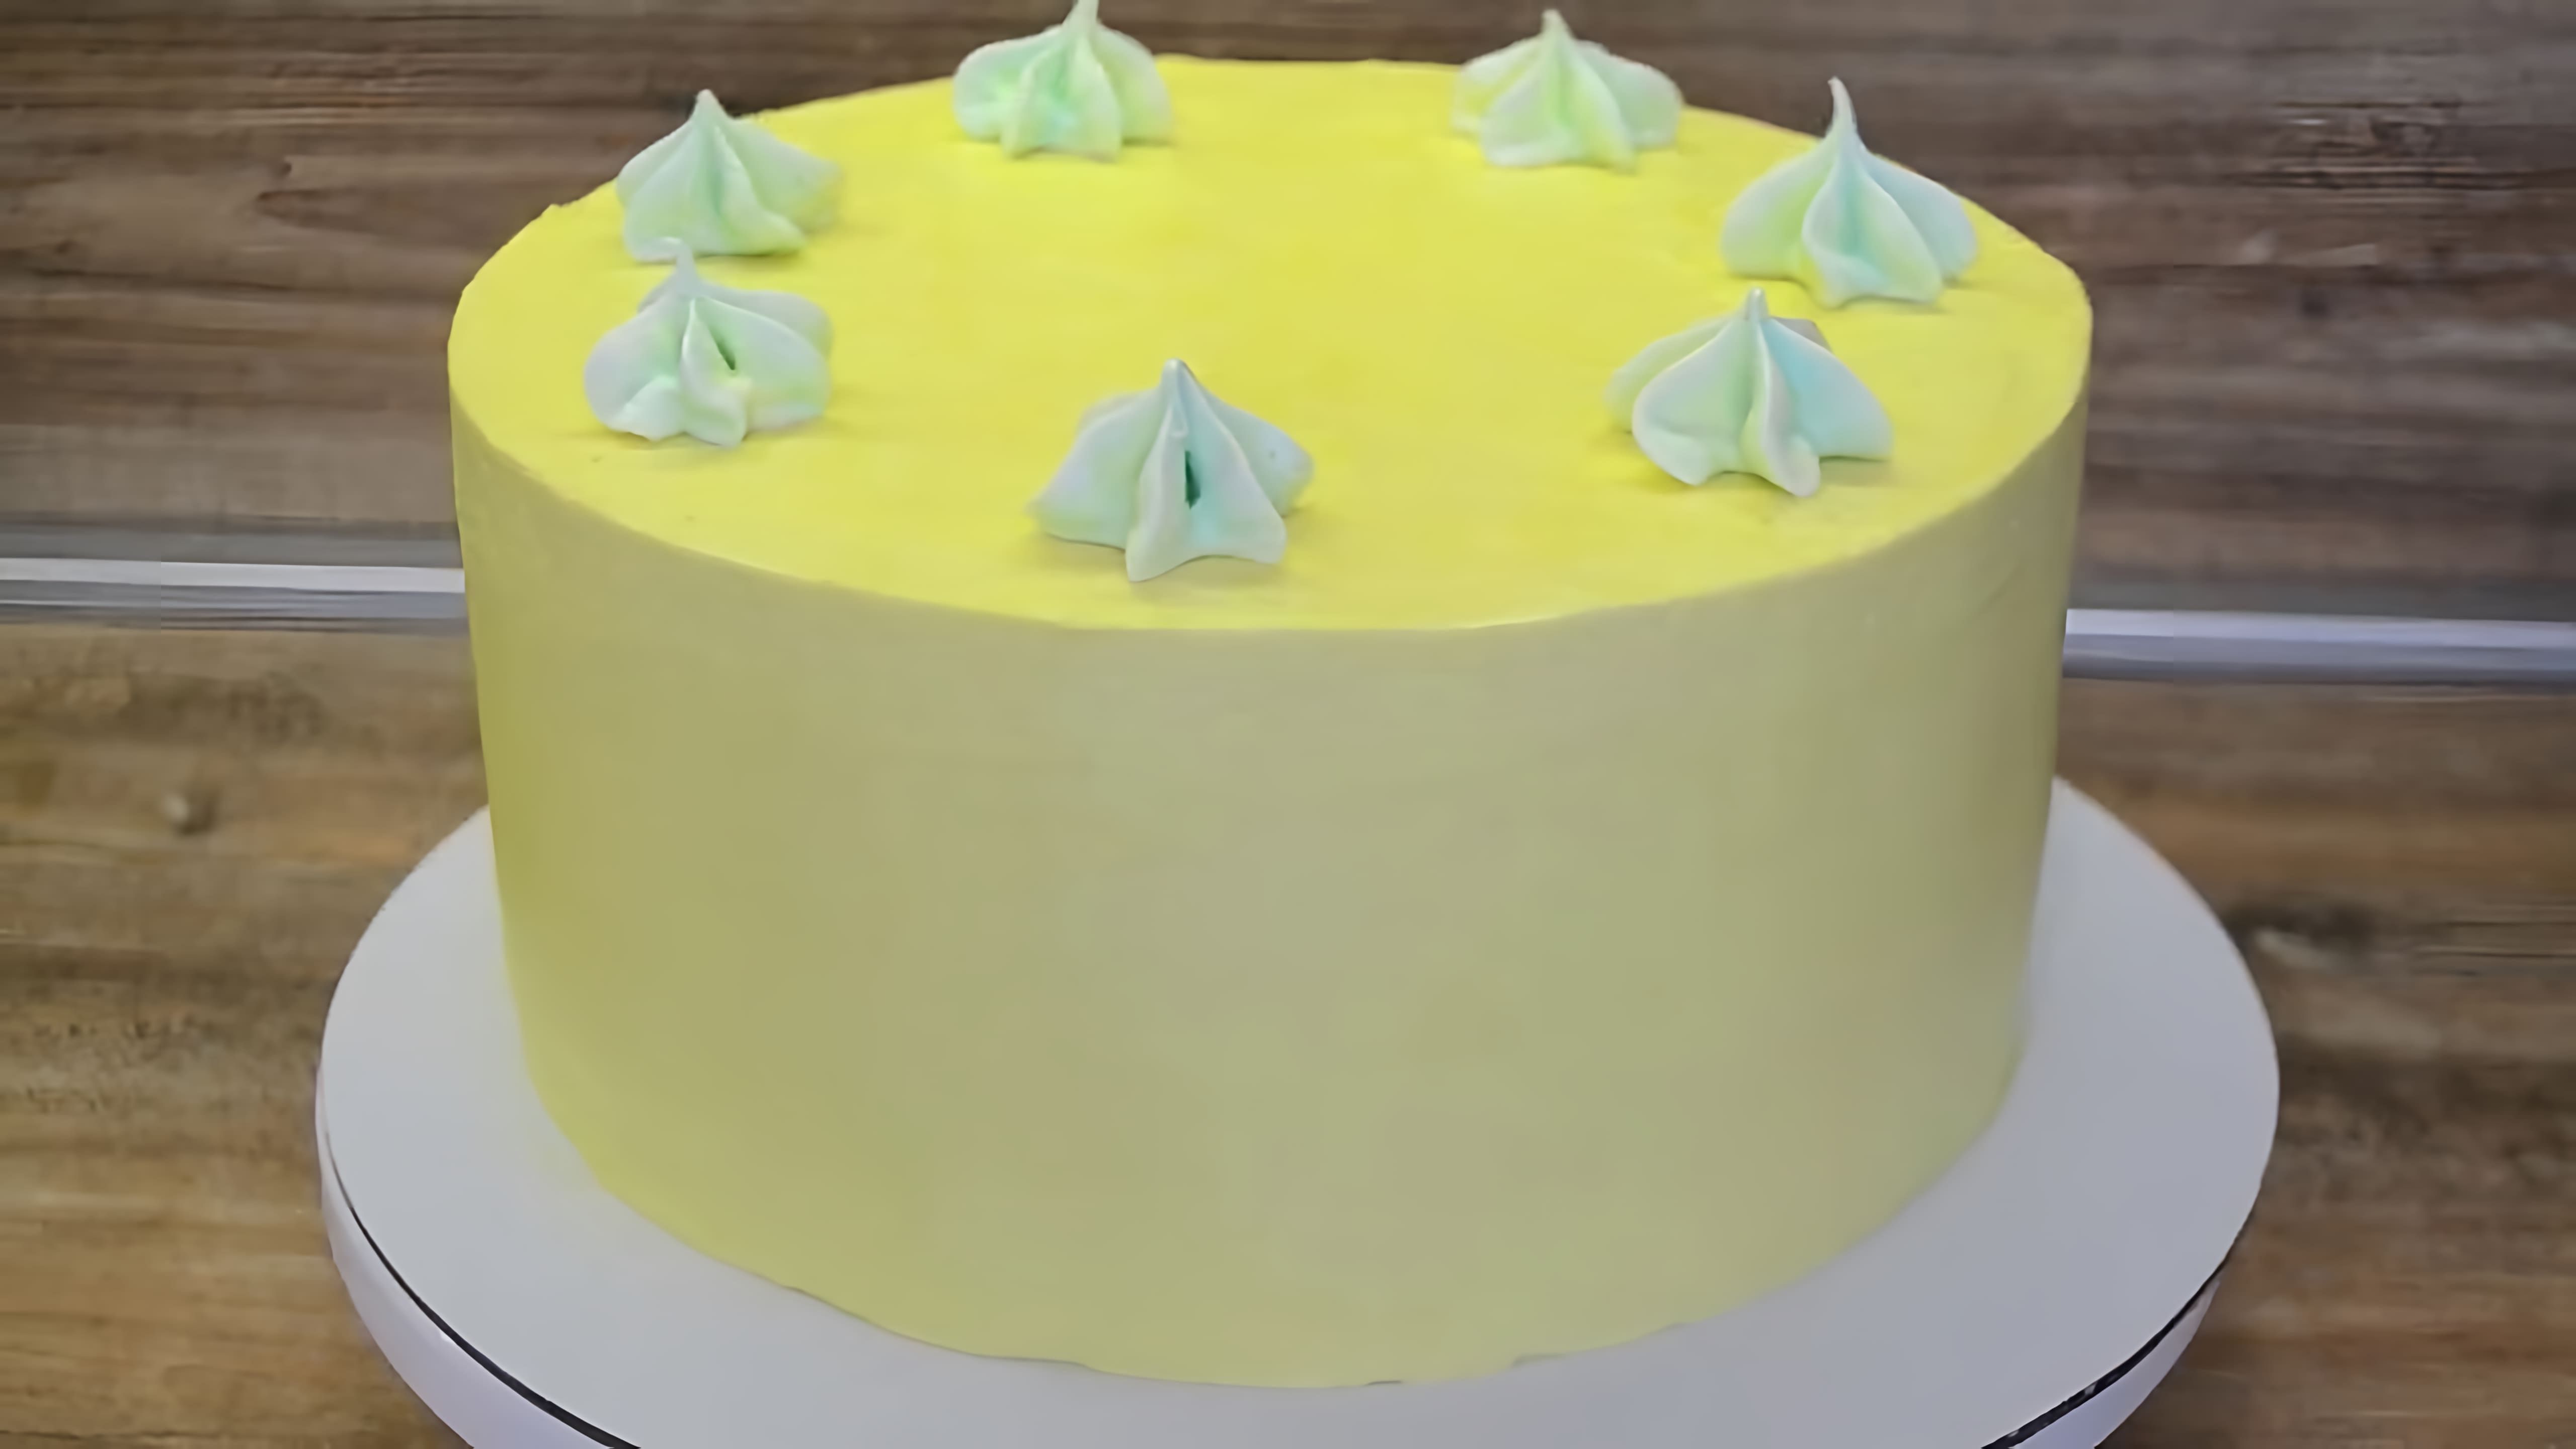 В этом видео демонстрируется рецепт популярного торта "Молочная девочка" с йогуртовым кремом и фруктами